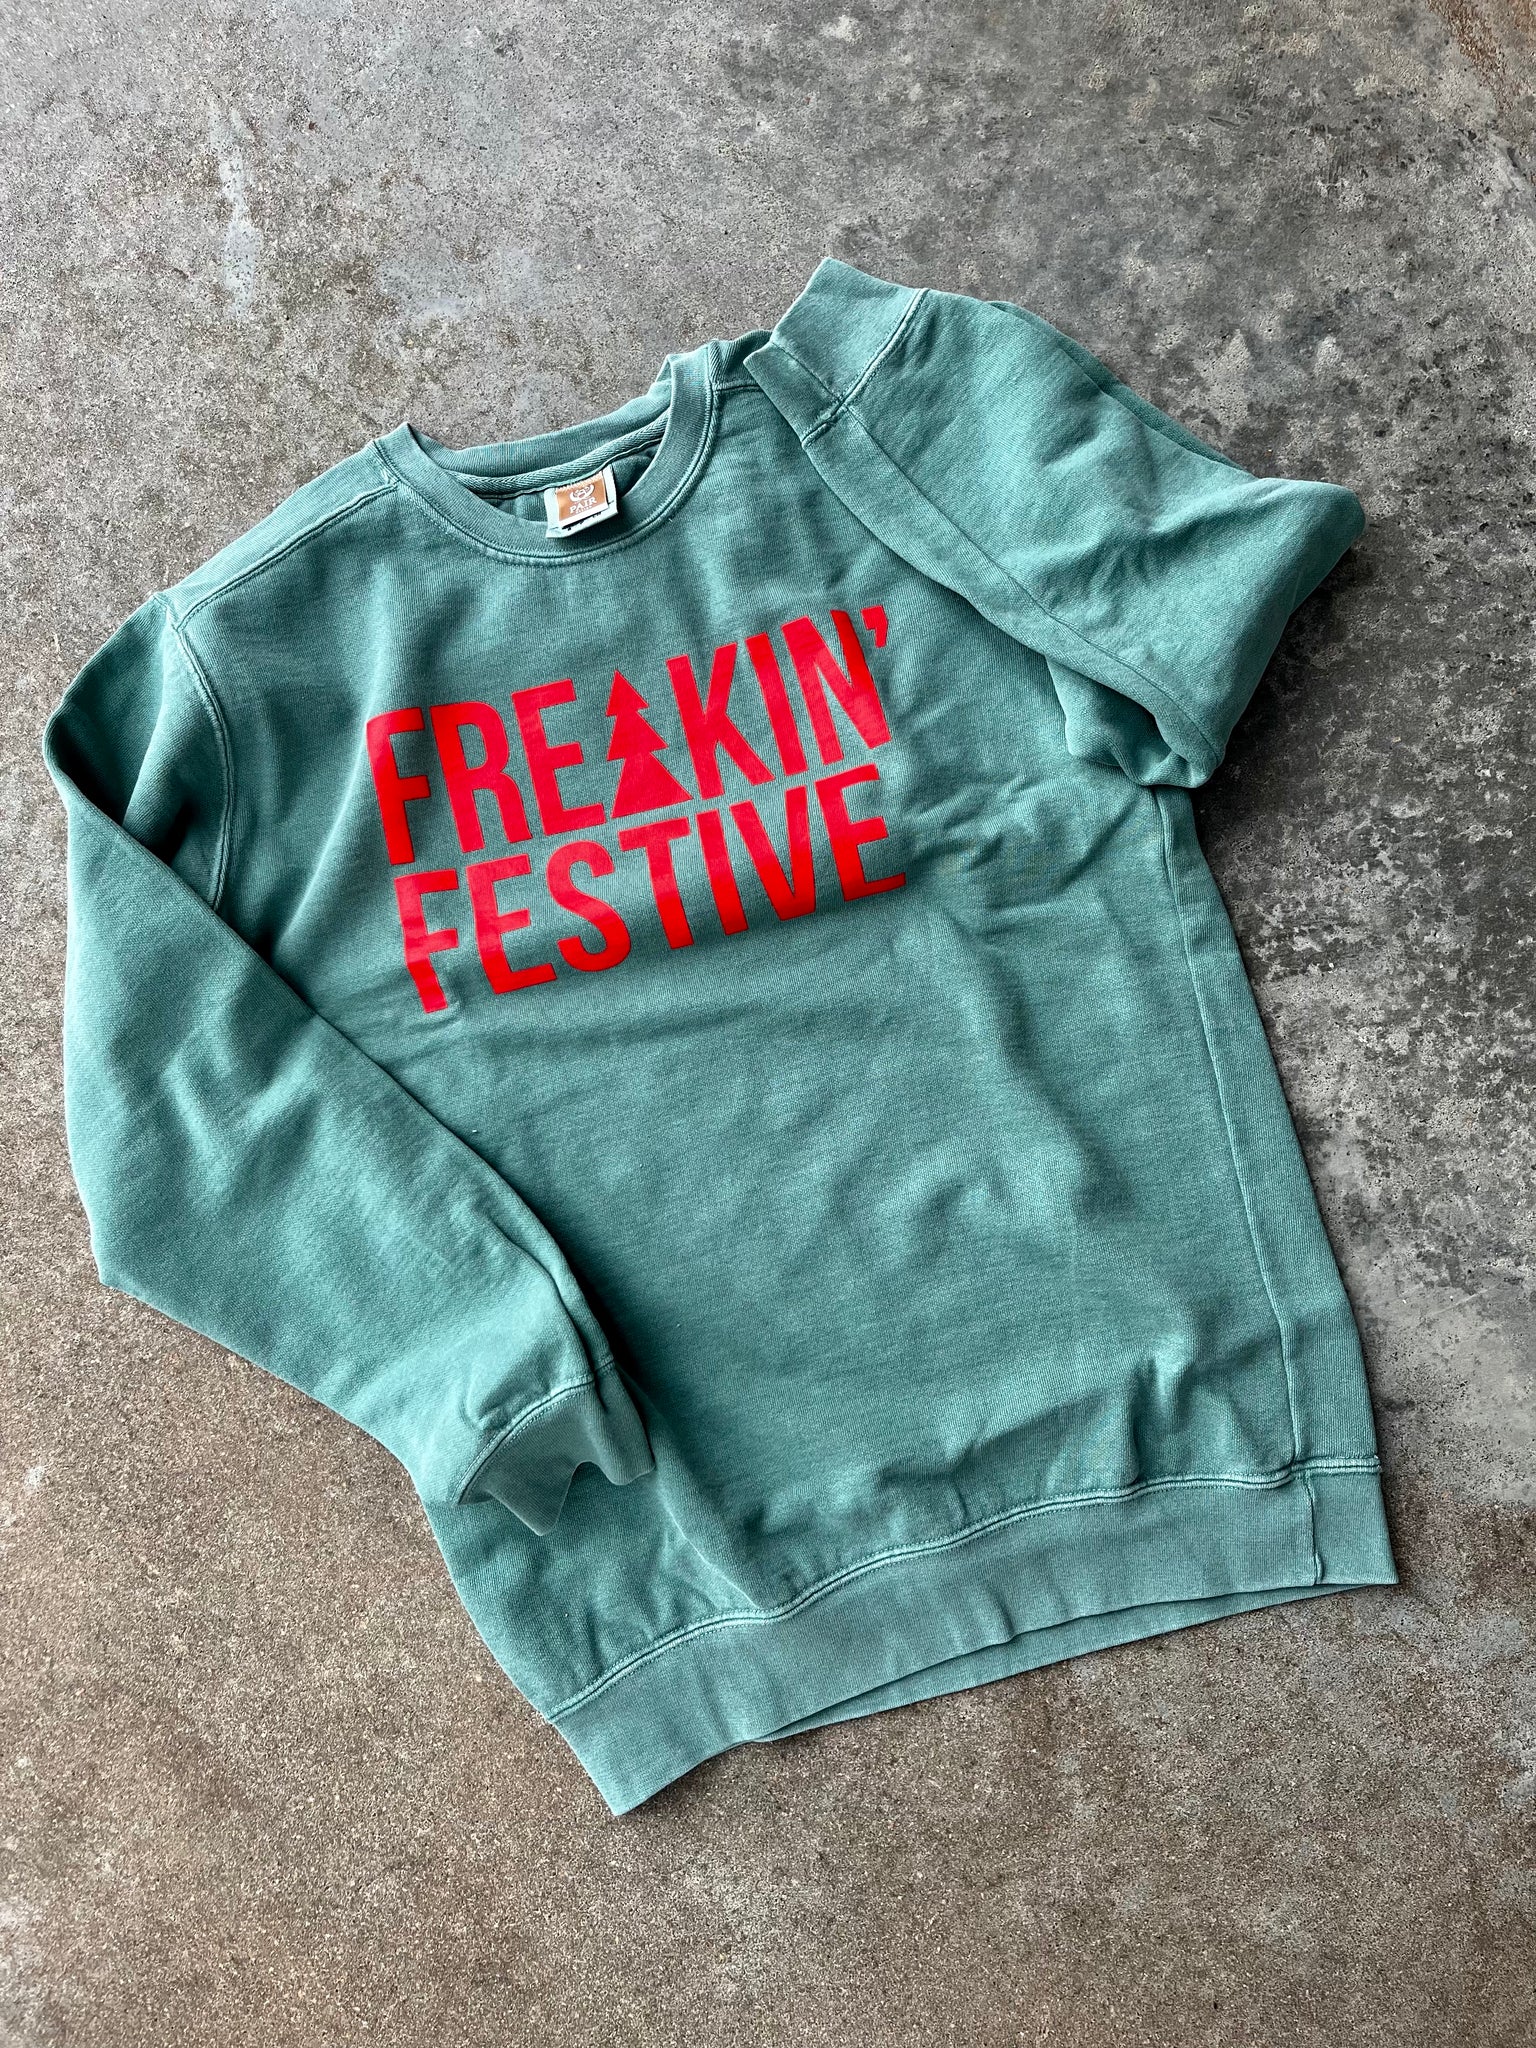 Freakin’ Festive Tee/Sweatshirt/Hoodie